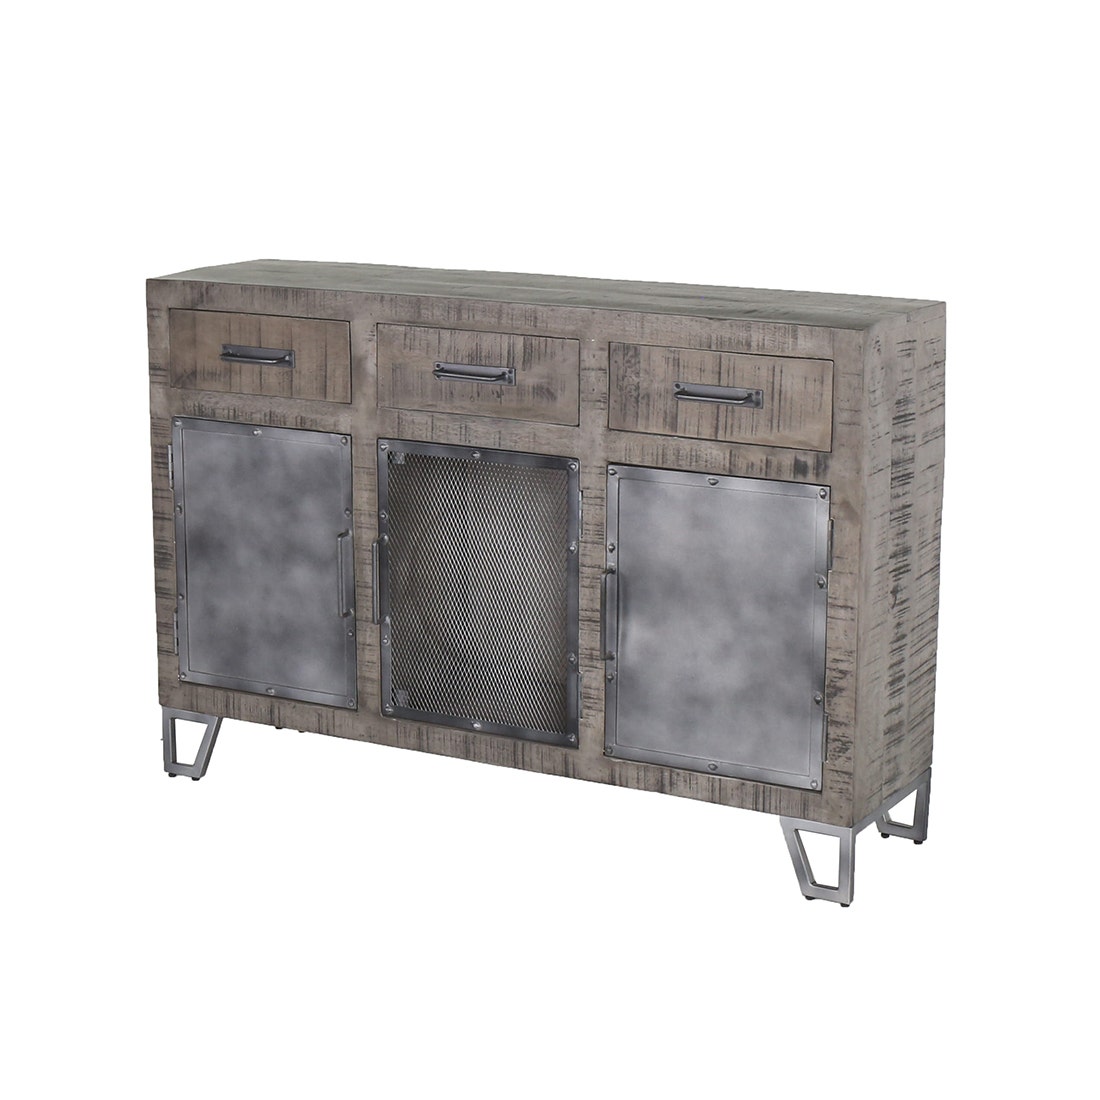 19170562-boozy-furniture-storage-organization-storage-furniture-01